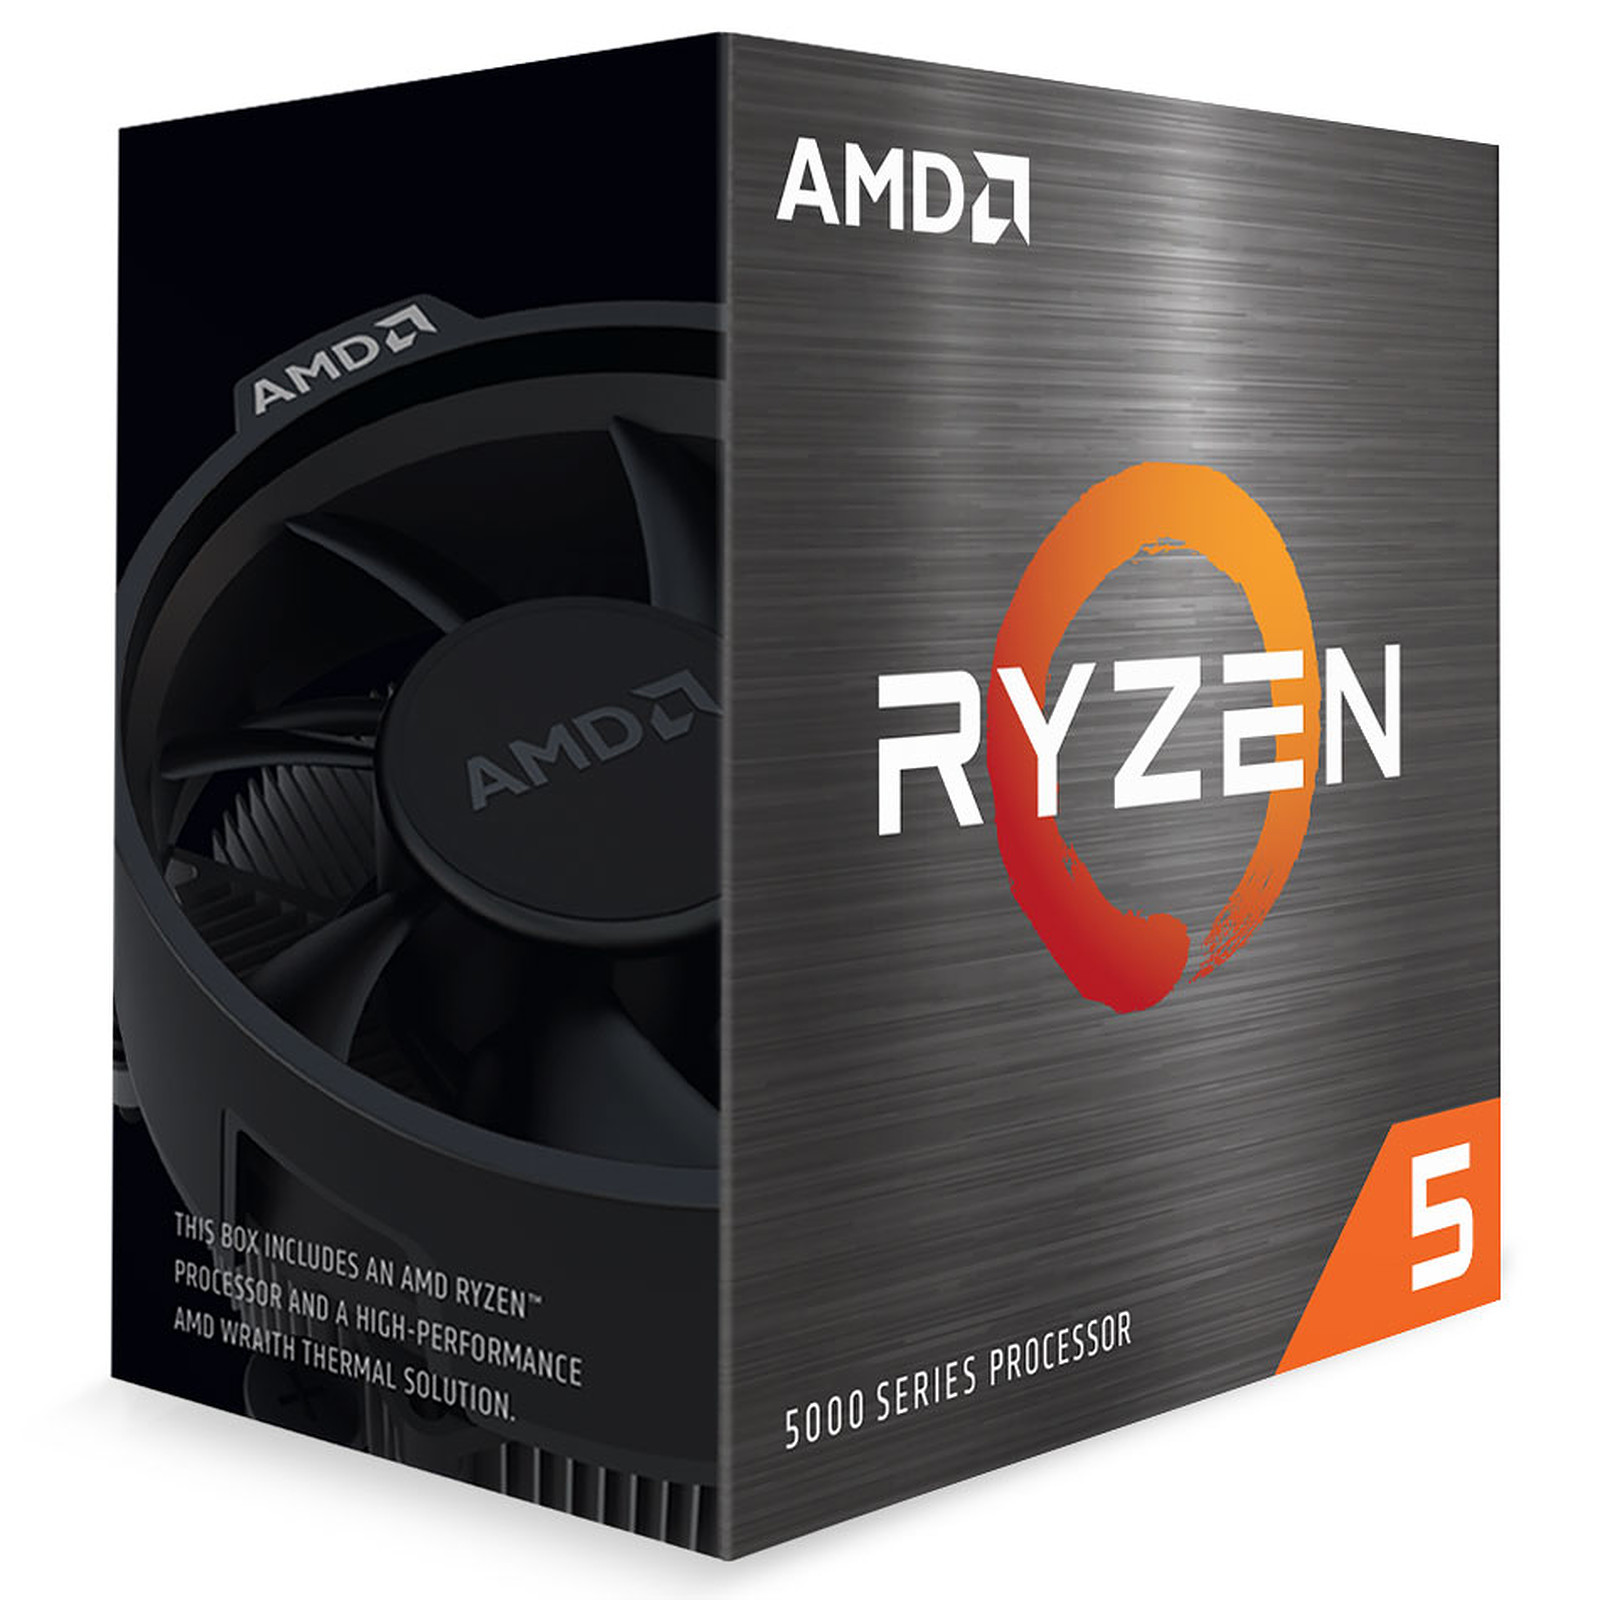 AMD processzor Ryzen 5 5500 AM4 Box (6 mag, 12 szál, 3,6GHz / 4,2GHz, 16MB gyorsítótár, 65W) Wraith Stealth hűtővel